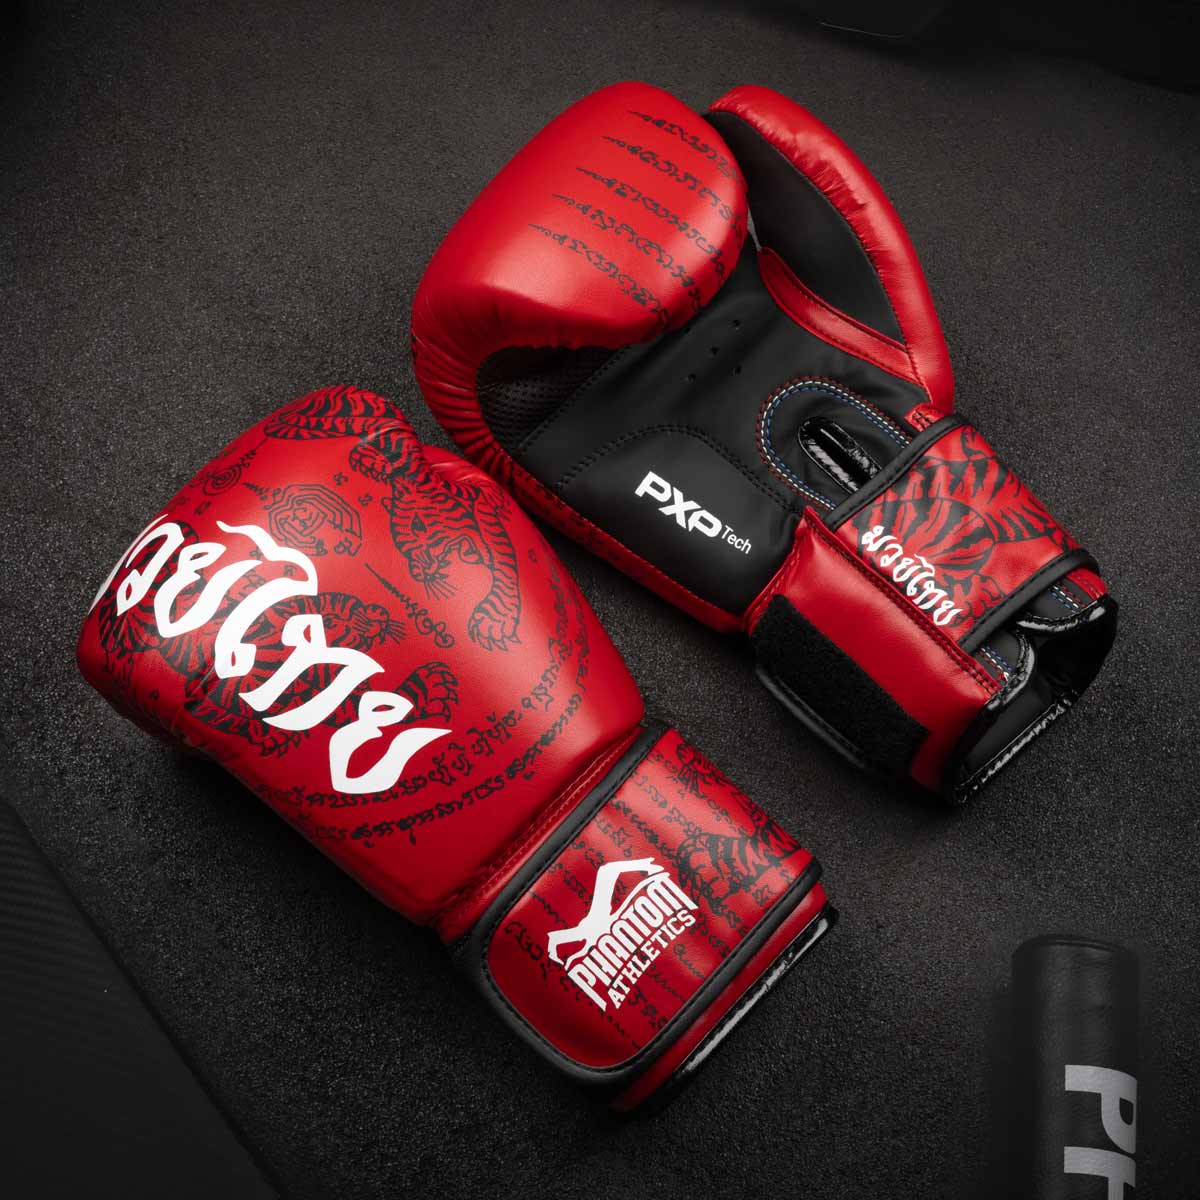 Die Phantom Muay Thai Boxhandschuhe in Top Qualität mit thailändischem Print in der Farbe Rot am Gymboden.